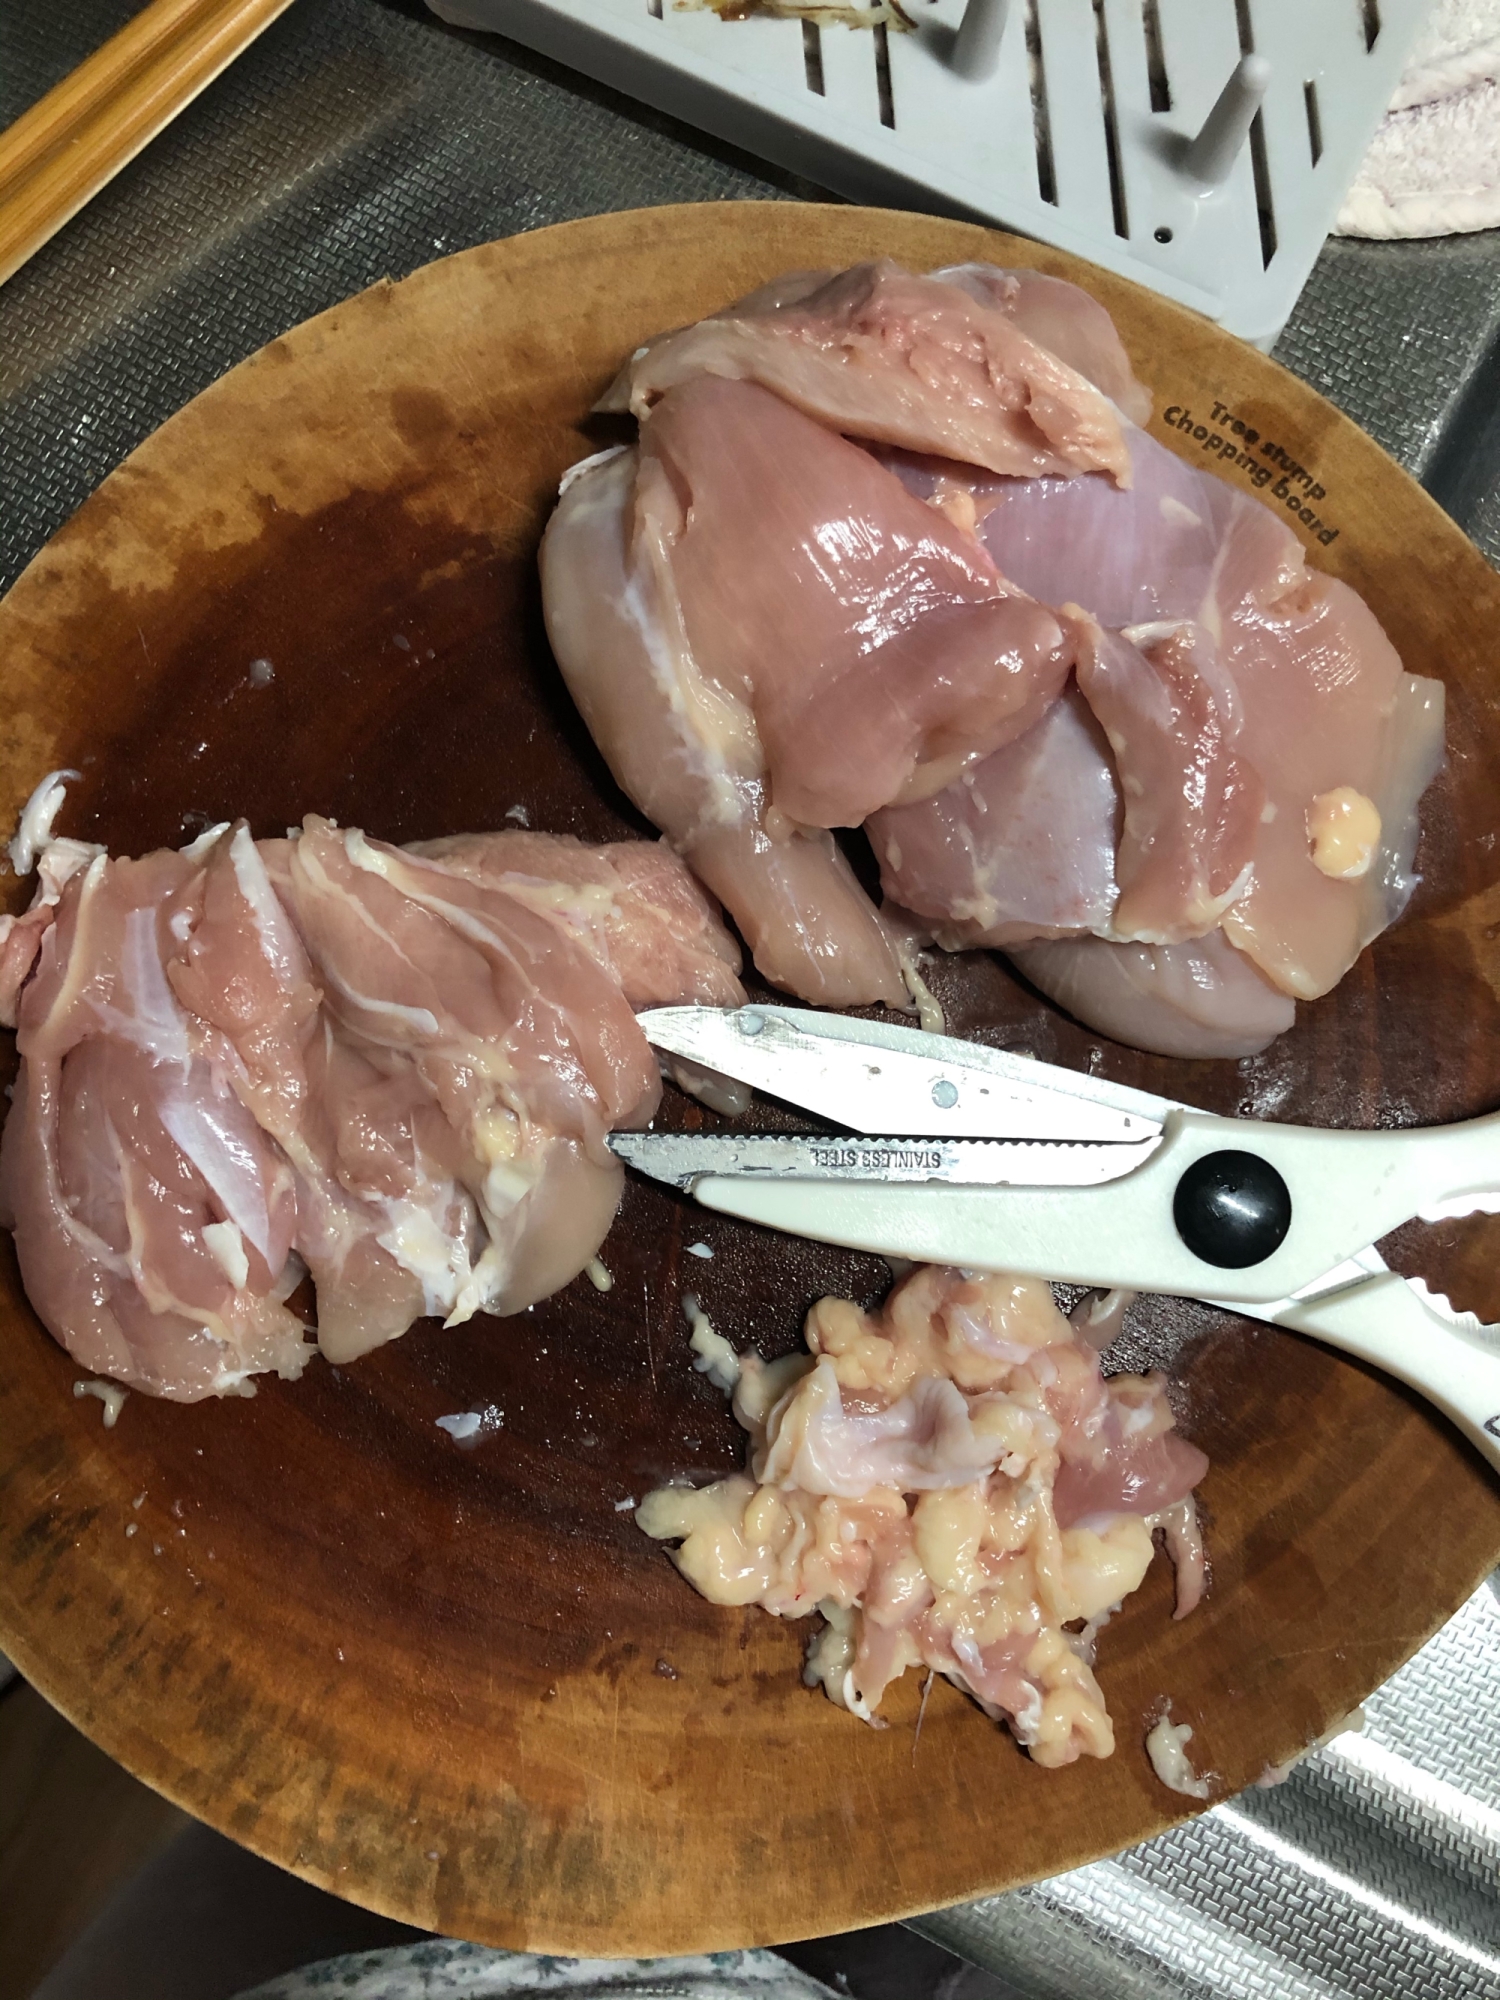 キッチンバサミで鶏肉の脂肪とスジの取り方